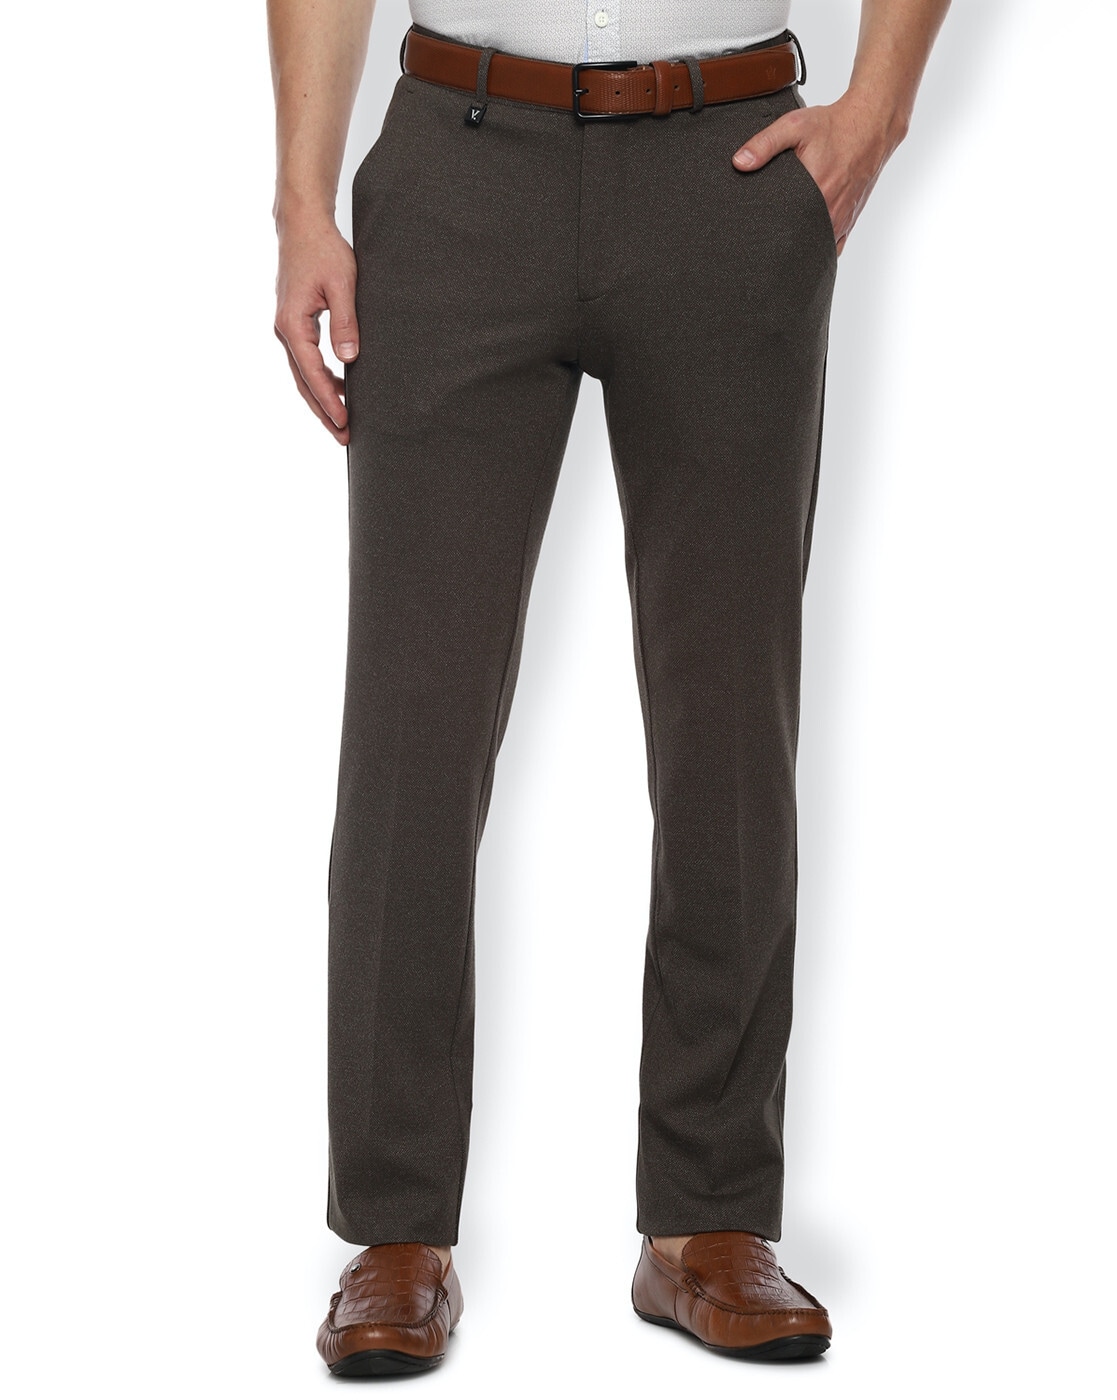 Sehao Men's Long Casual Business Slim Expandable Trousers Suit Pants  Plain-Front Pant Coffee XL - Walmart.com